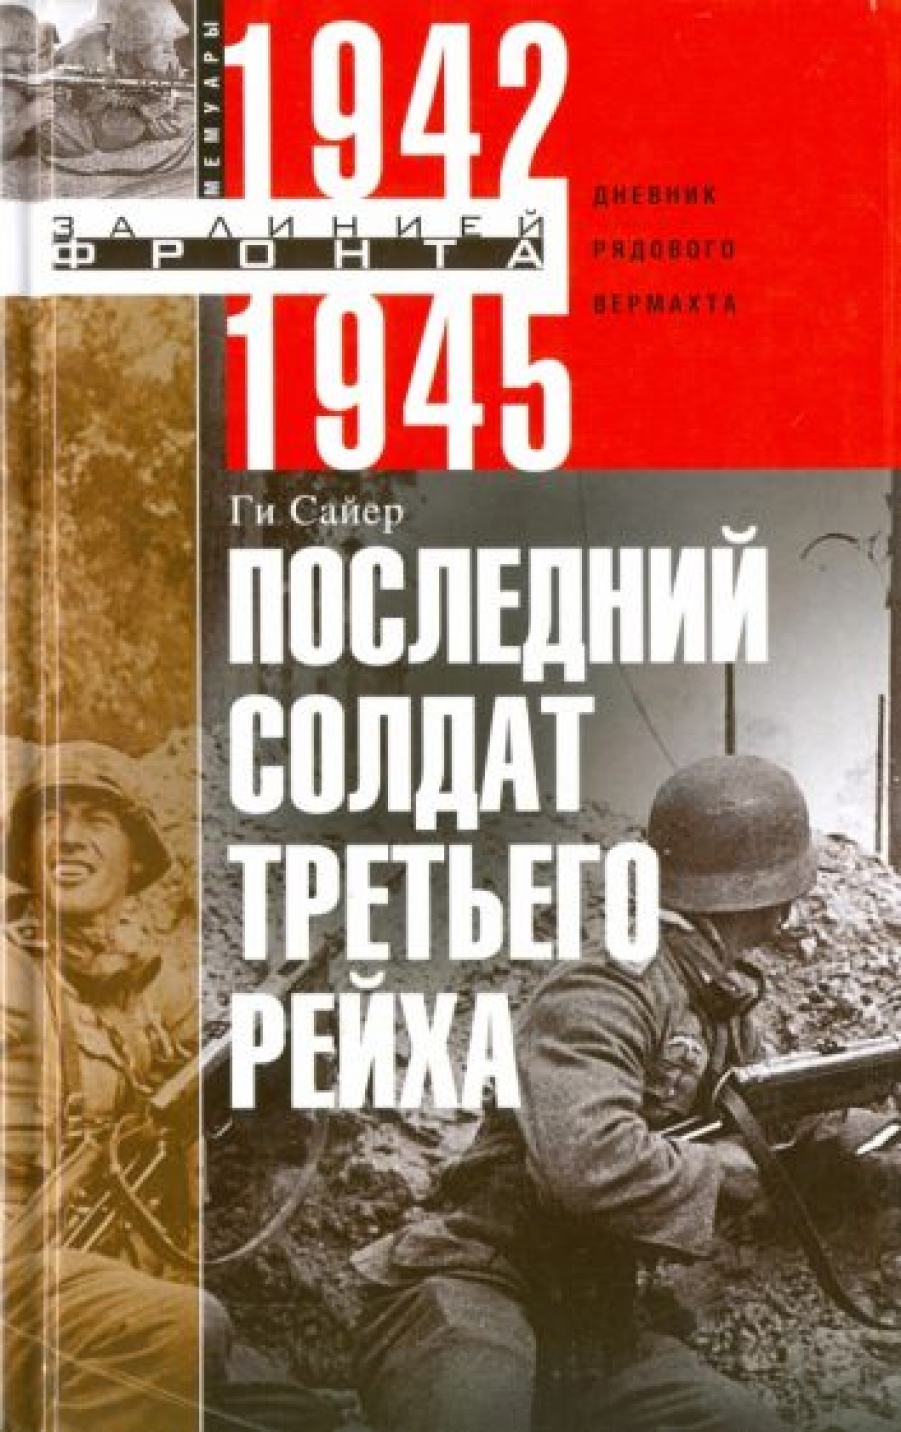      .   . 1942-1945 